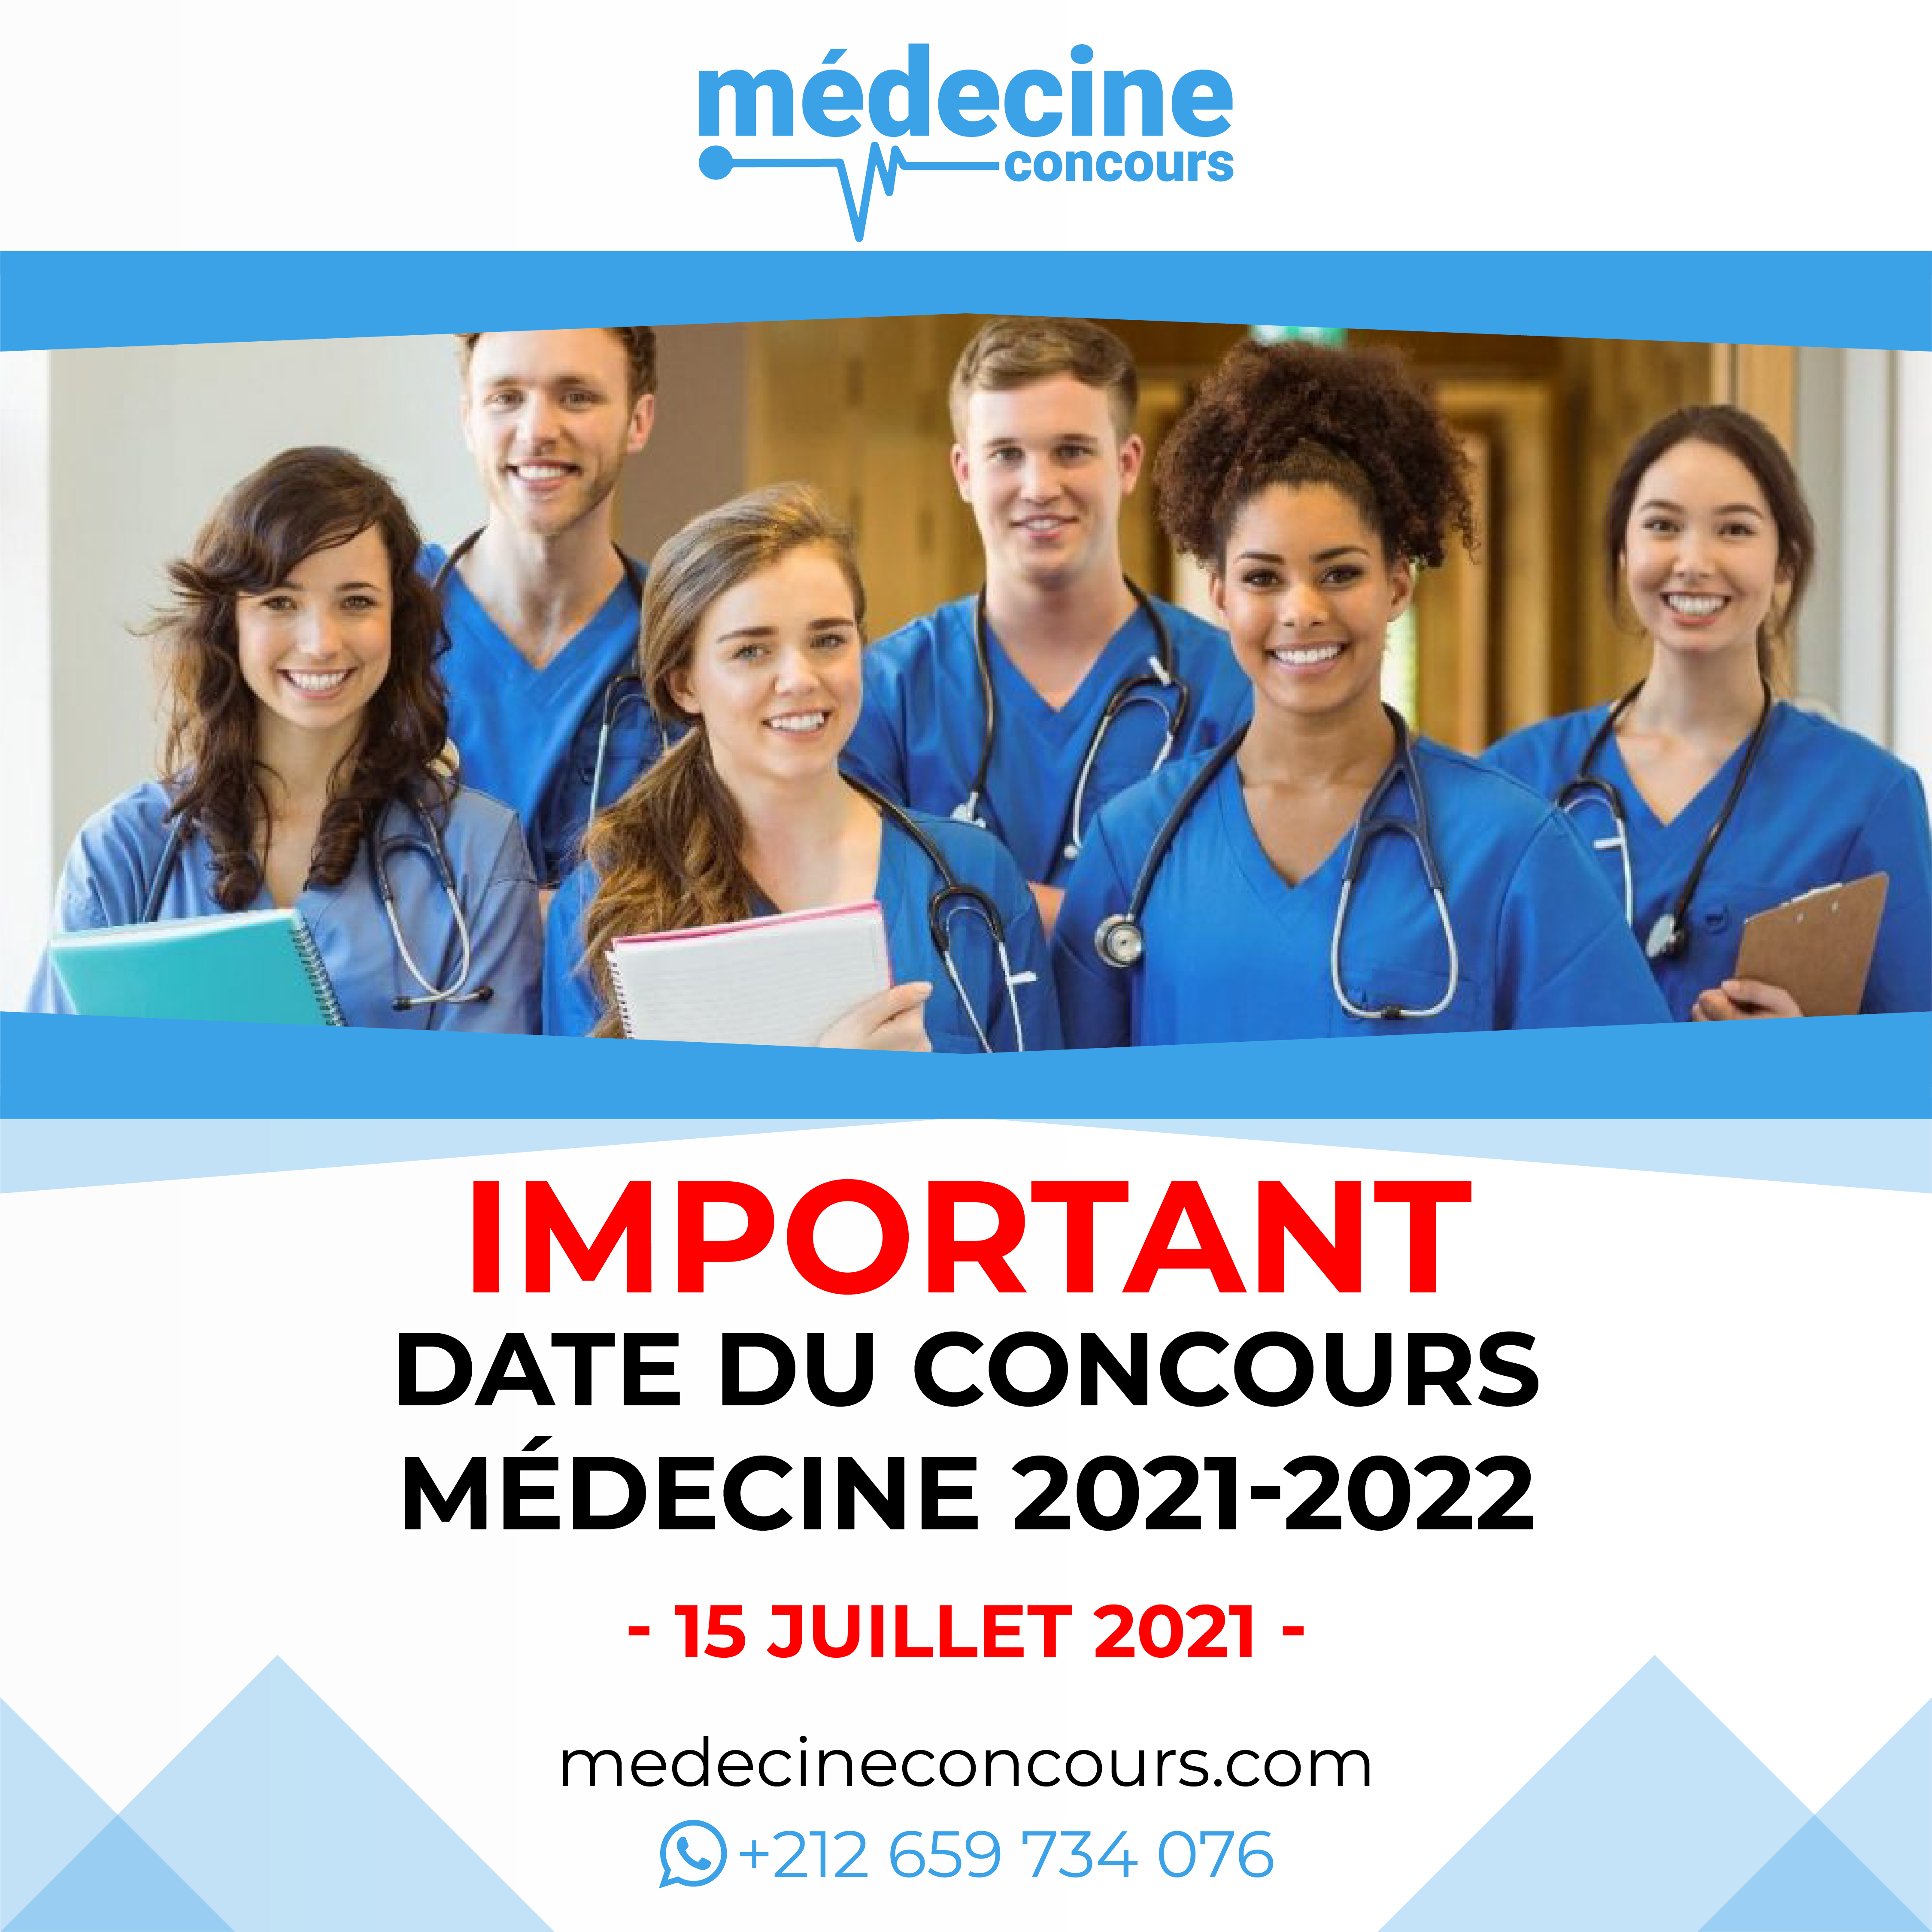 Concours de Médecine 2021 - 2022- medecinecouncours.com